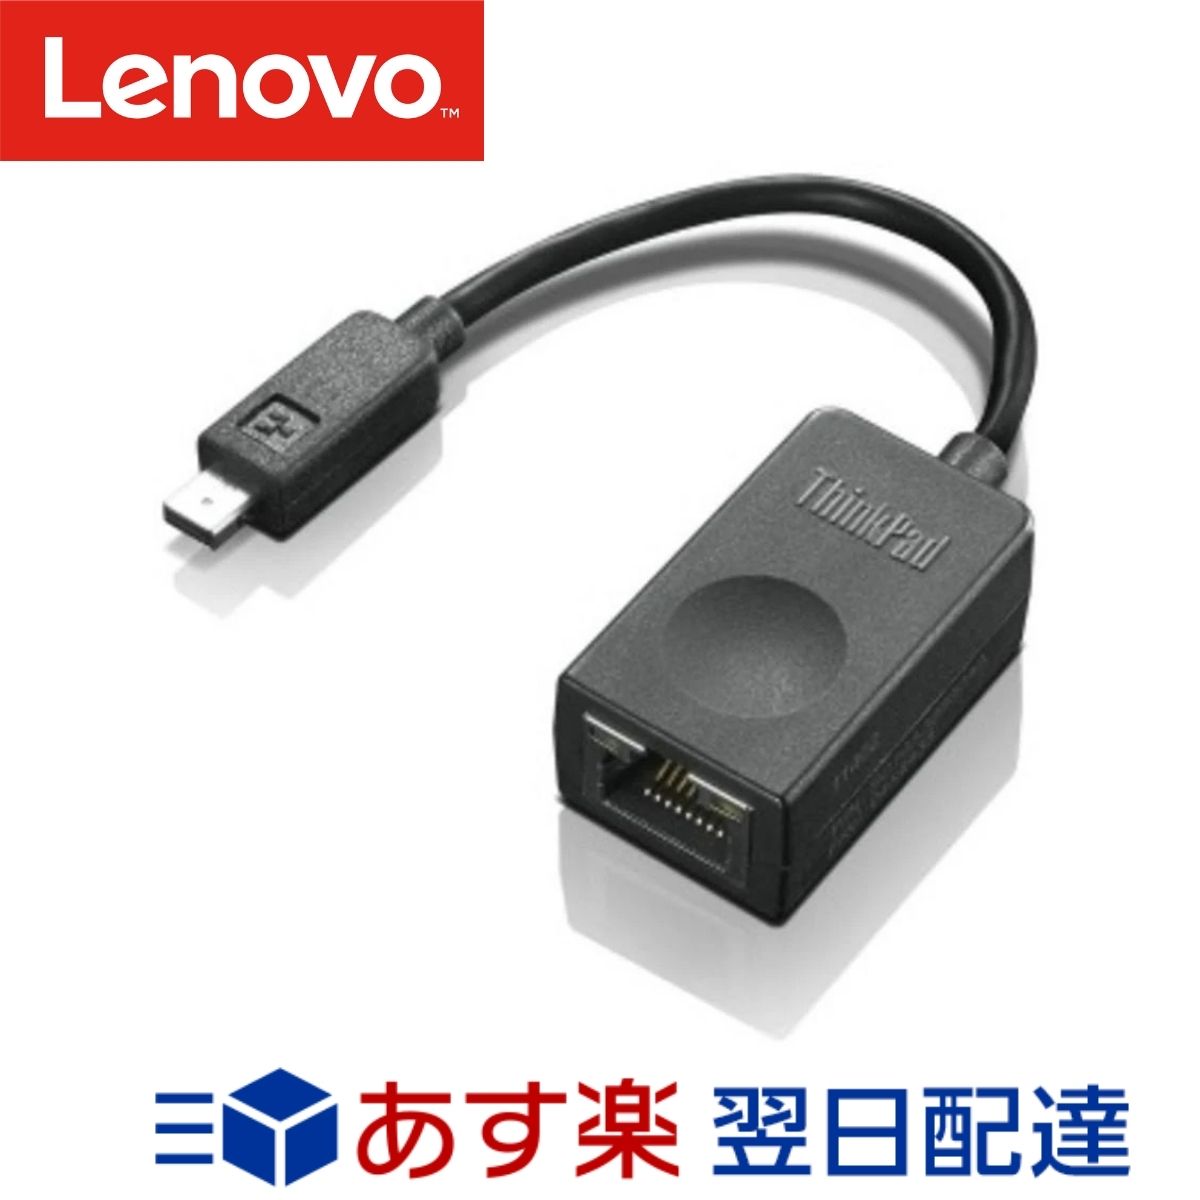 【メーカー純正品 1年保証】 Lenovo レノボ イーサネット拡張ケーブル 4X90F84315 ThinkPad (ThinkPad X1 Carbon専用) メーカー純正品